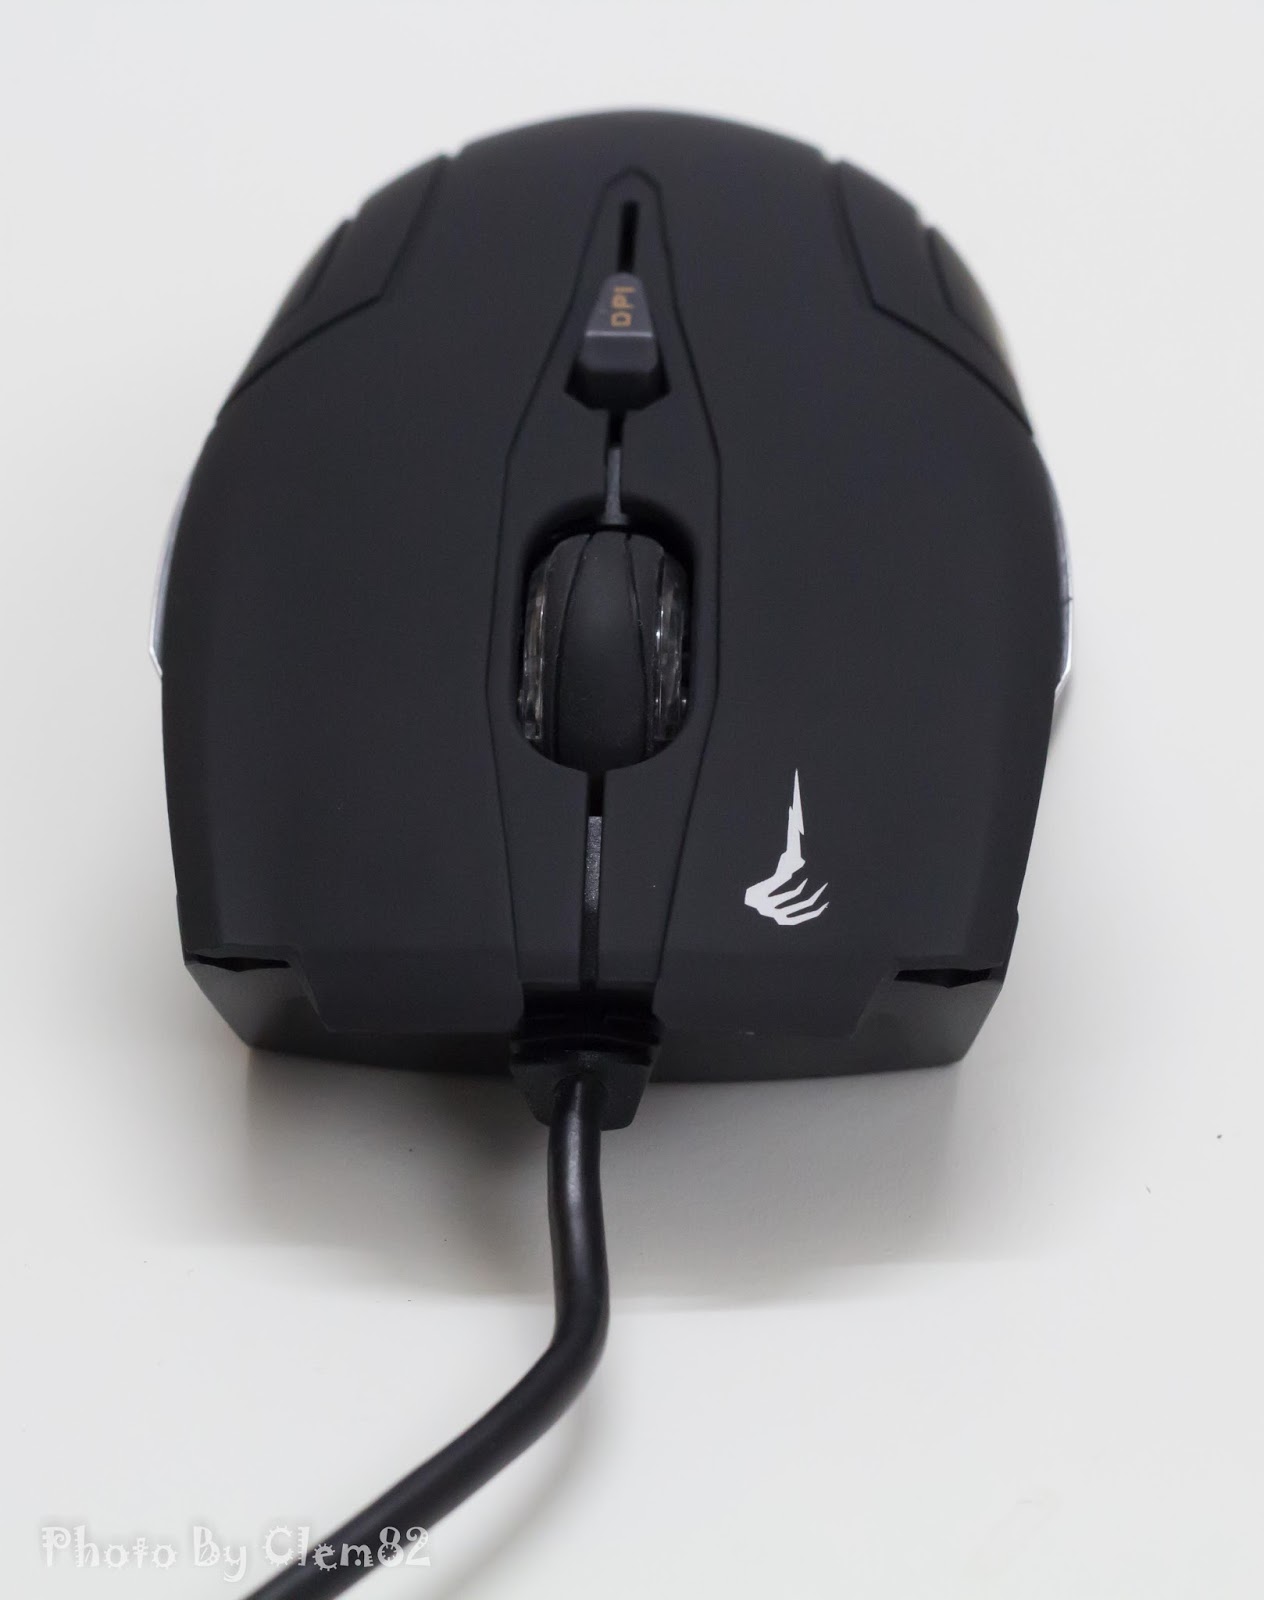 Gamdias Demeter Optical Gaming Mouse 5